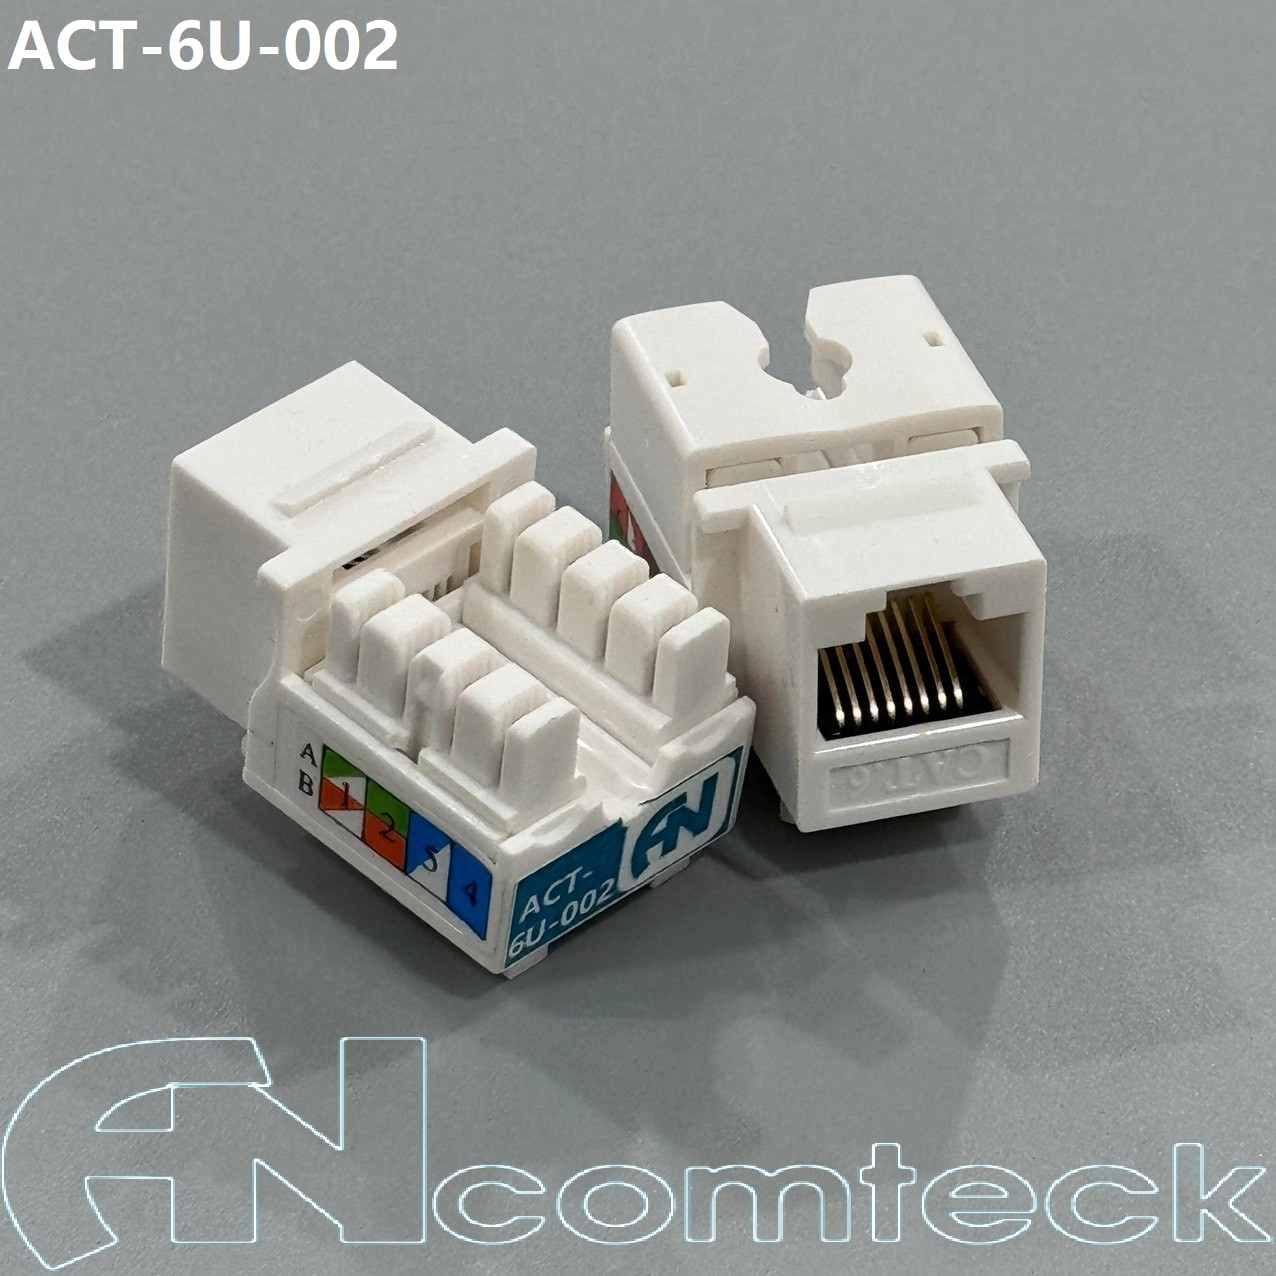 Nhân mạng RJ45 CAT6 , ACT-6U-002 ancomteck